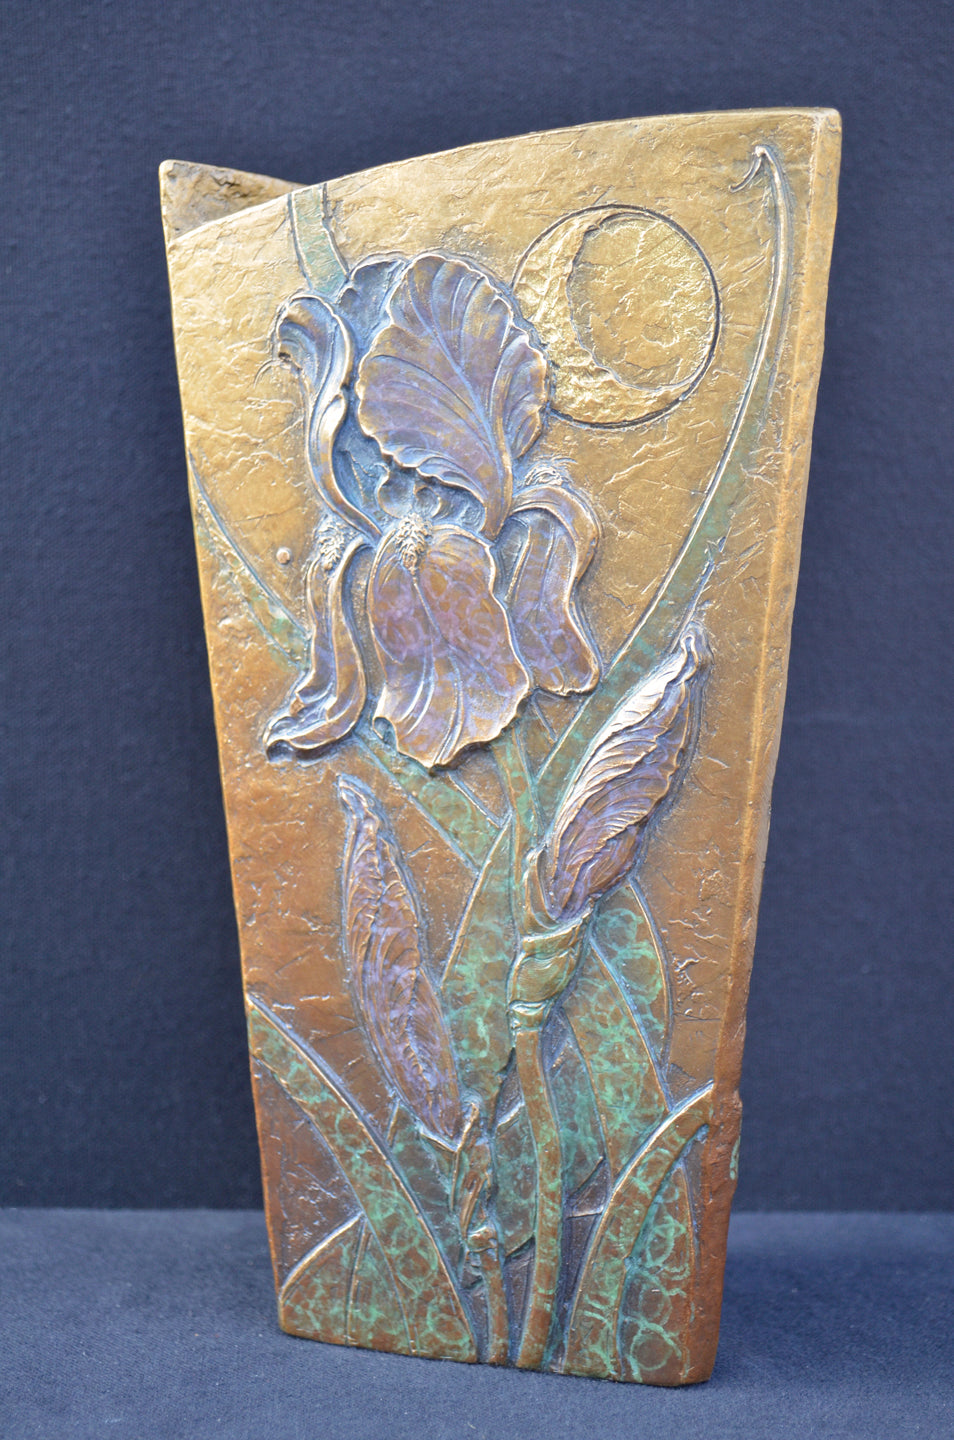 Sun, Moon Iris Garden - JD WELSH - bronze vase - 10 x 5.75"